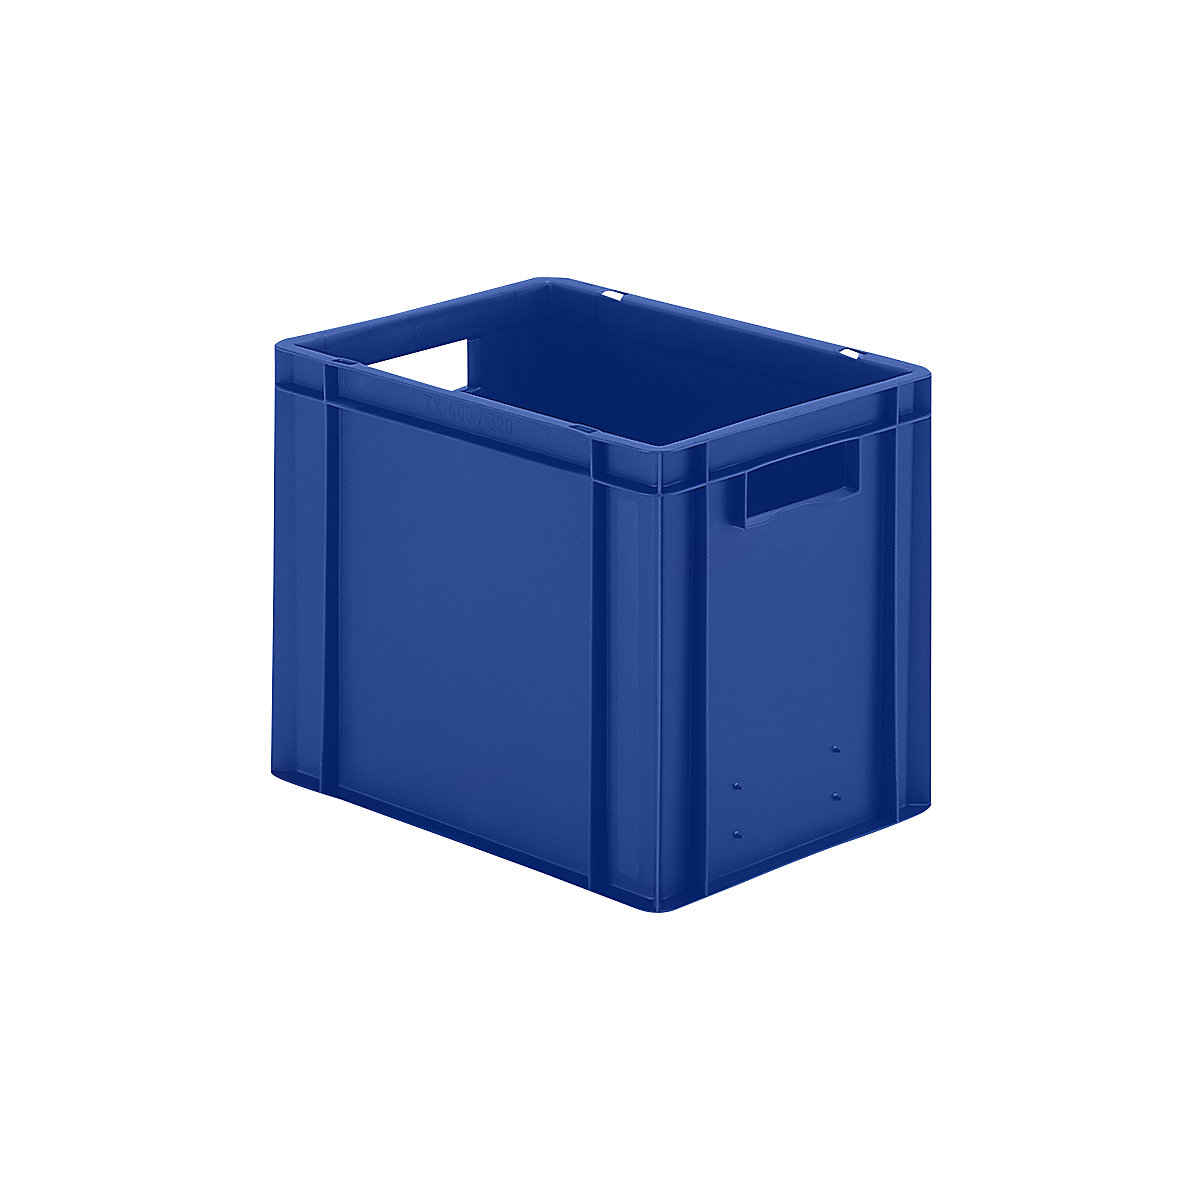 Euro-Format-Stapelbehälter, Wände und Boden geschlossen, LxBxH 400 x 300 x 320 mm, blau, VE 5 Stk